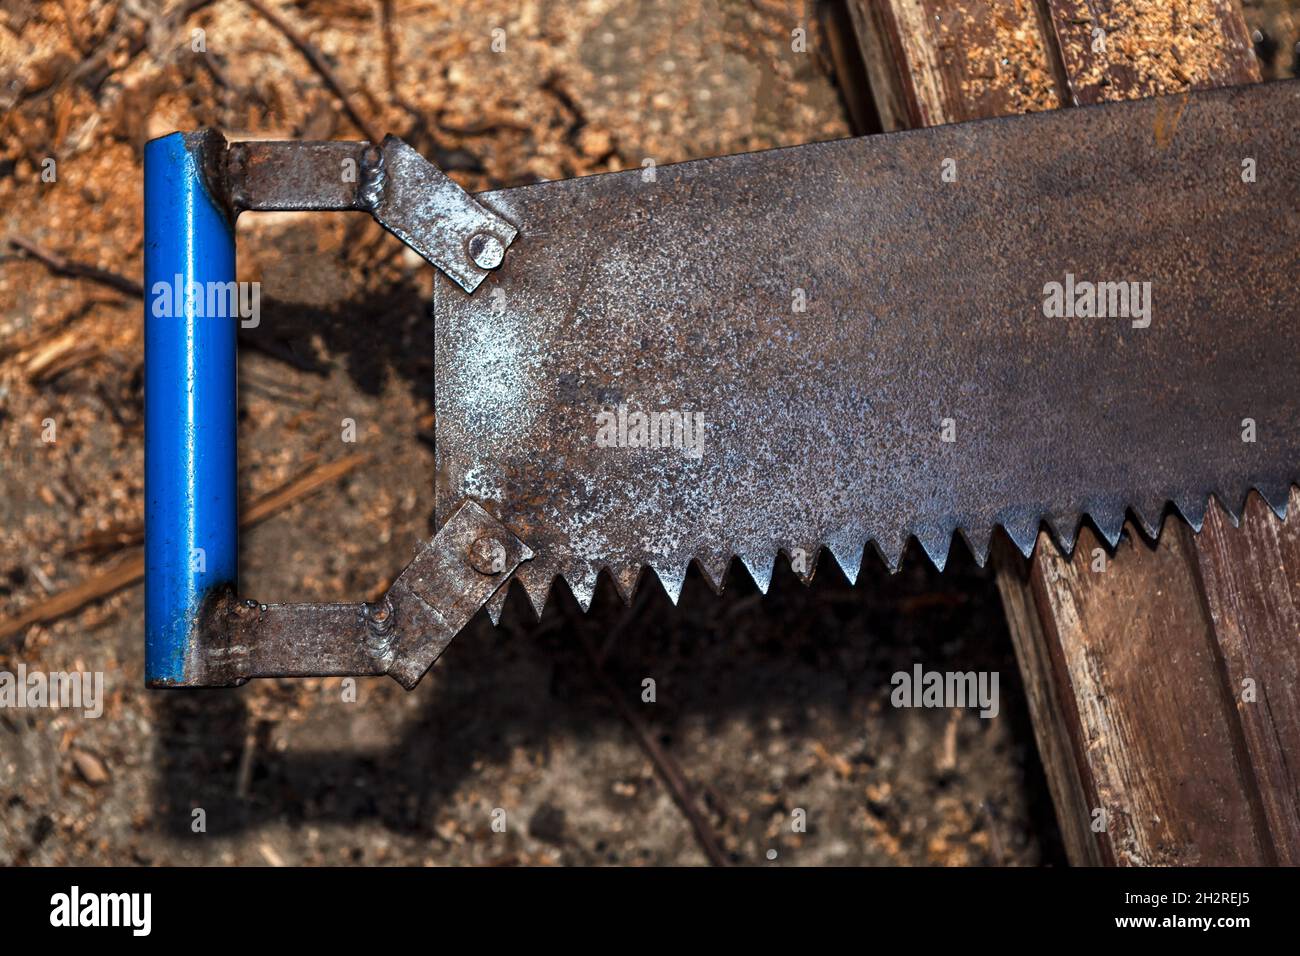 Ancienne scie à métaux rouillée.Outil manuel de coupe du bois Photo Stock -  Alamy